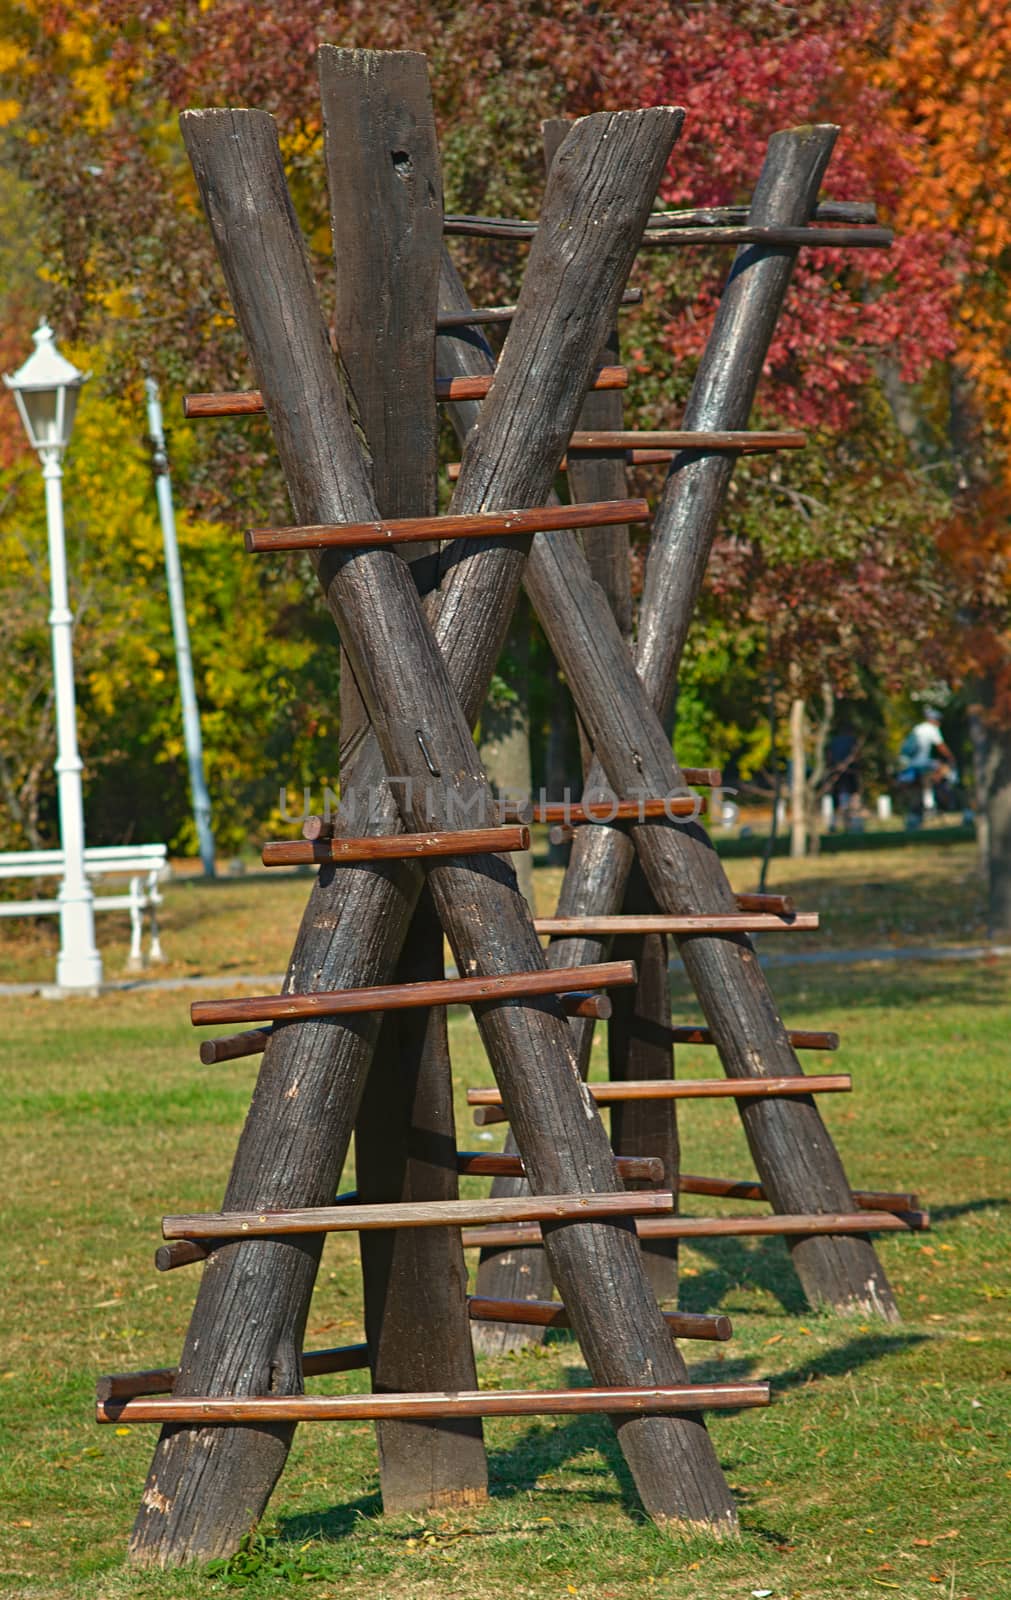 wooden children climbing toy in public park